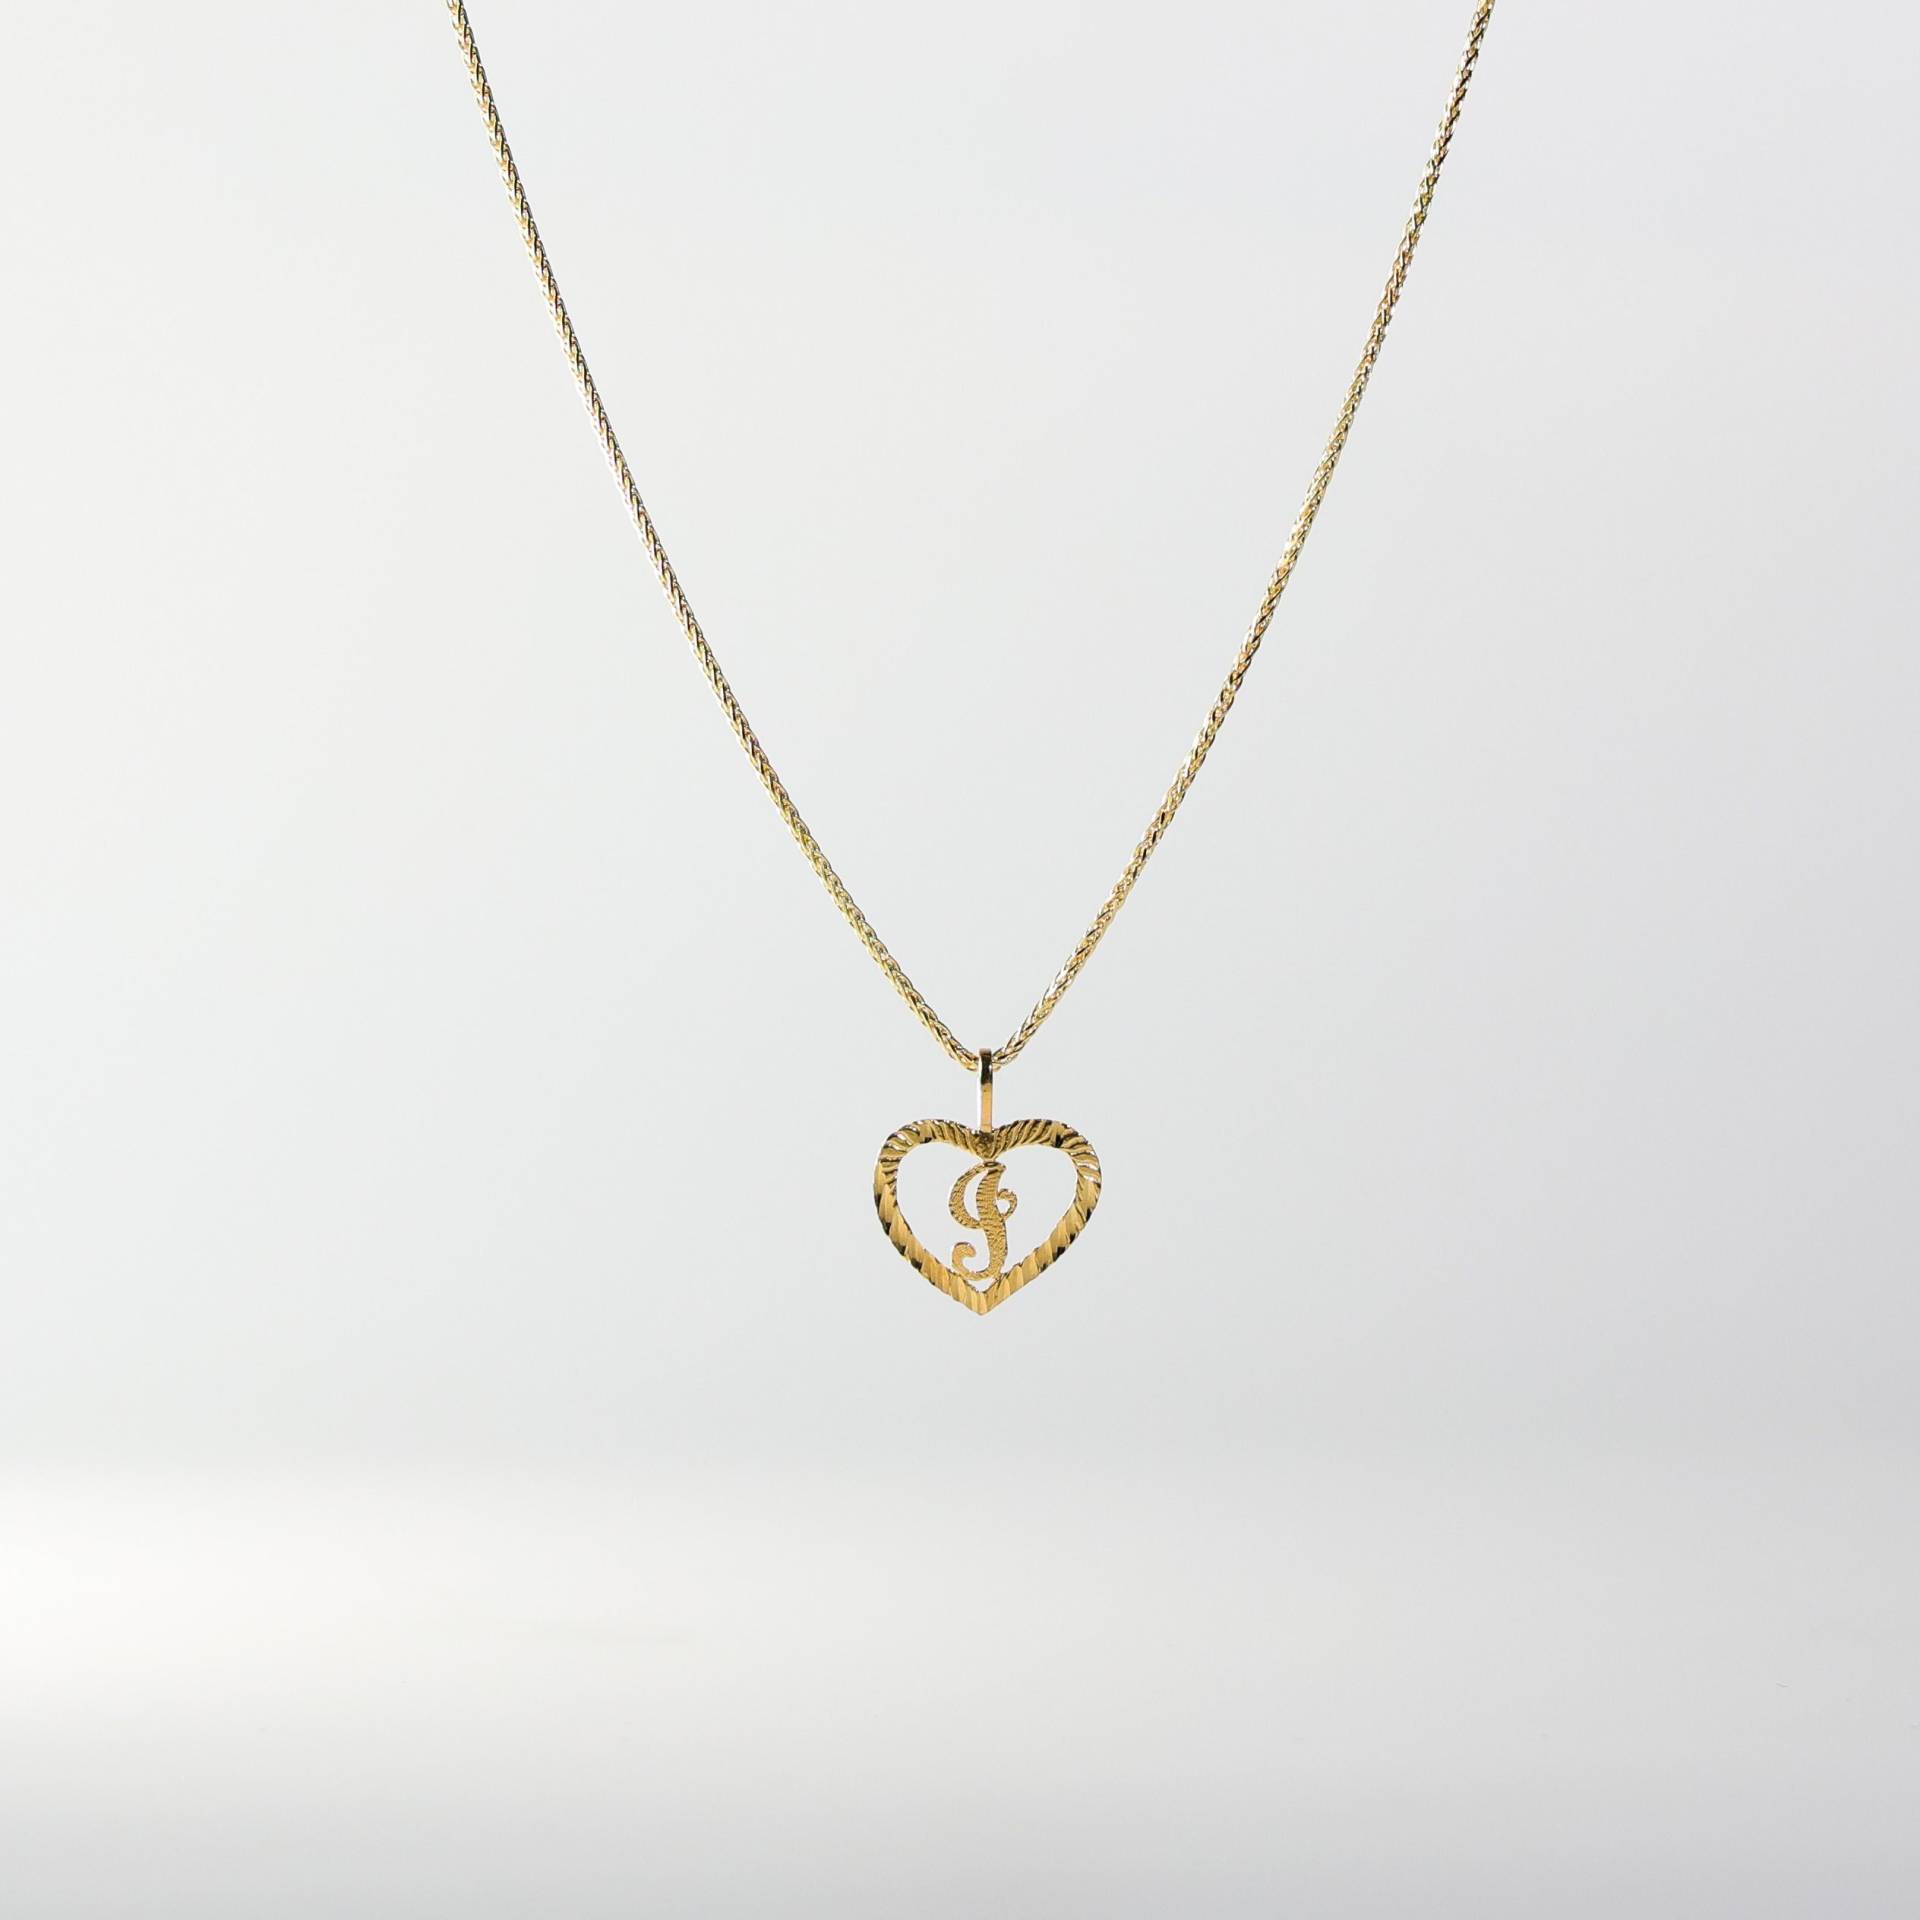 14K Gold "I" Initial Anhänger Charm - Echt Herz I Halskette von CharlieandCoGOLD